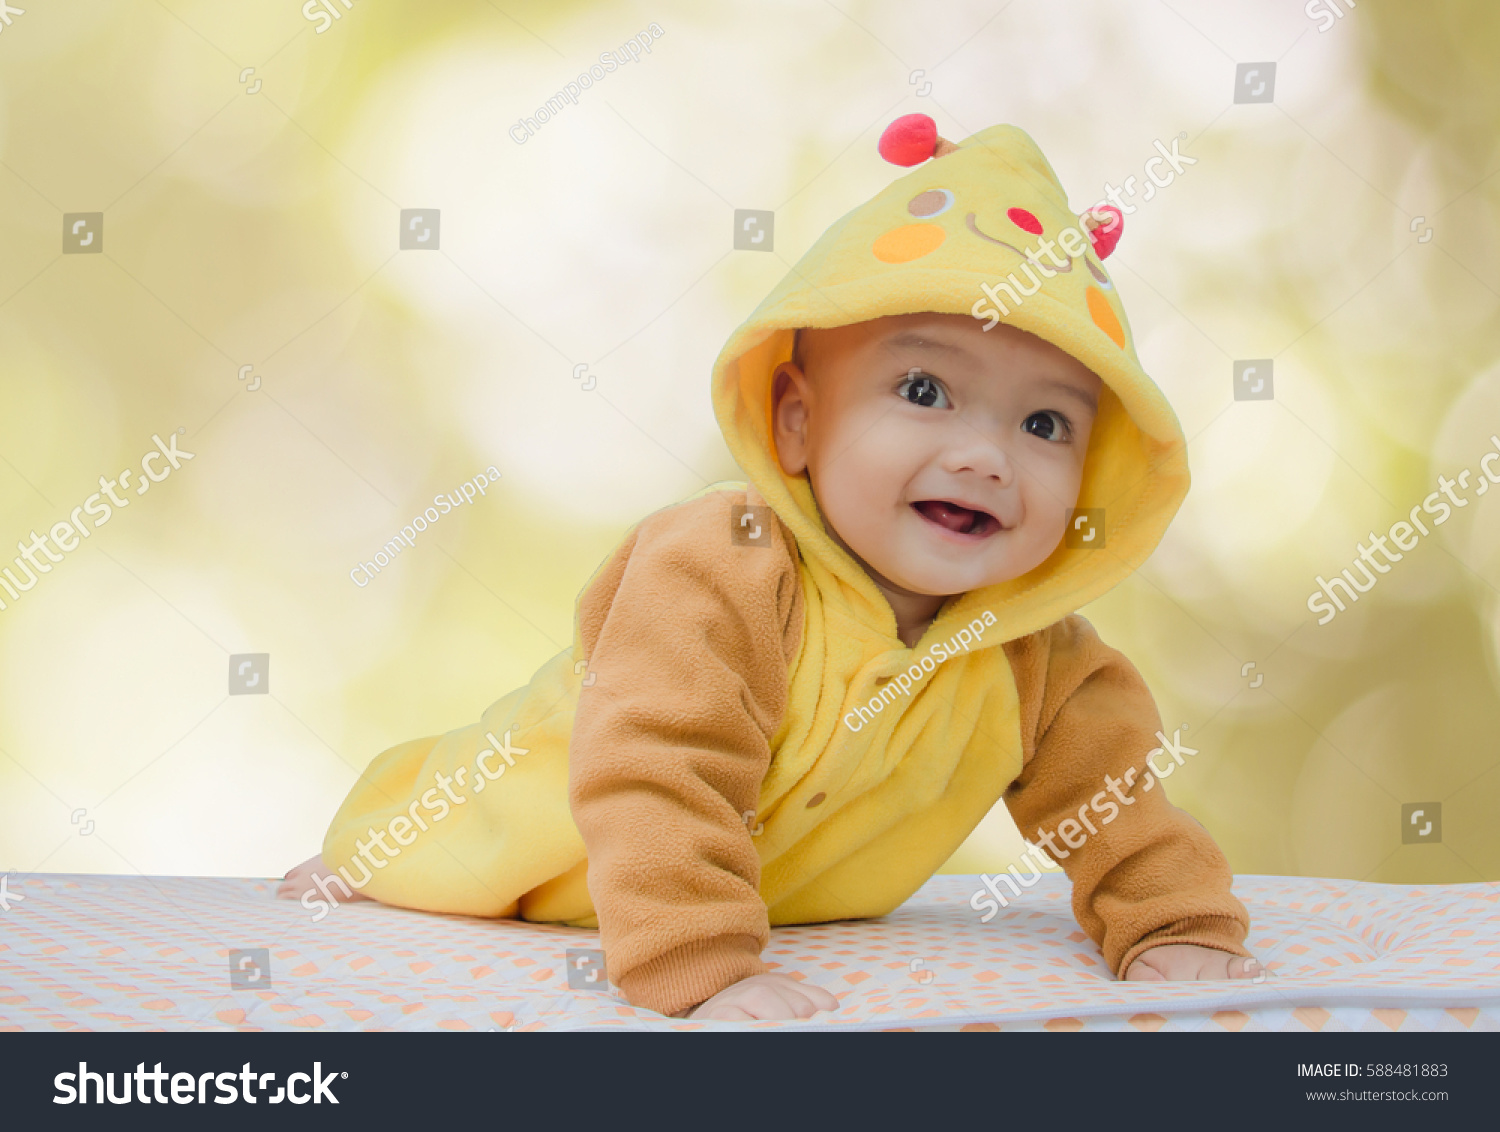 cute newborn baby boy smiling